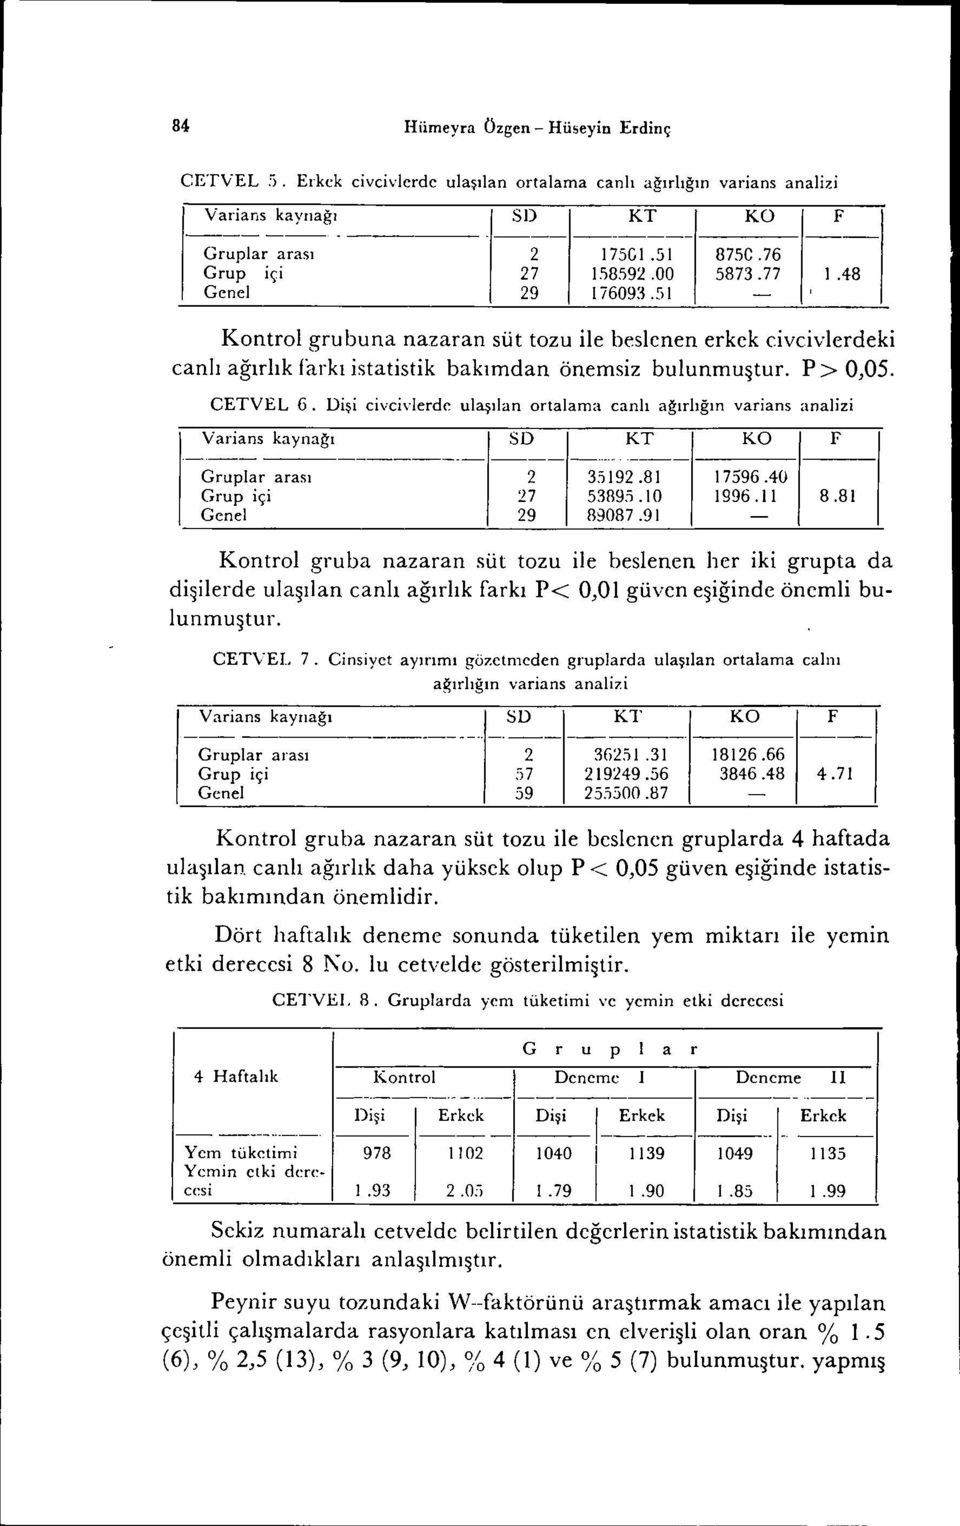 CETVEL 6. Dişi eiveivlerde ulaşılan ortalama canlı ağırlığın varians analizi Varians kaynağı SD KT KO F Grupla r arası Grup içi Genel 2 '27 29 35192.81 53895.10 89087.91 17596.40 1996.1 i 8.